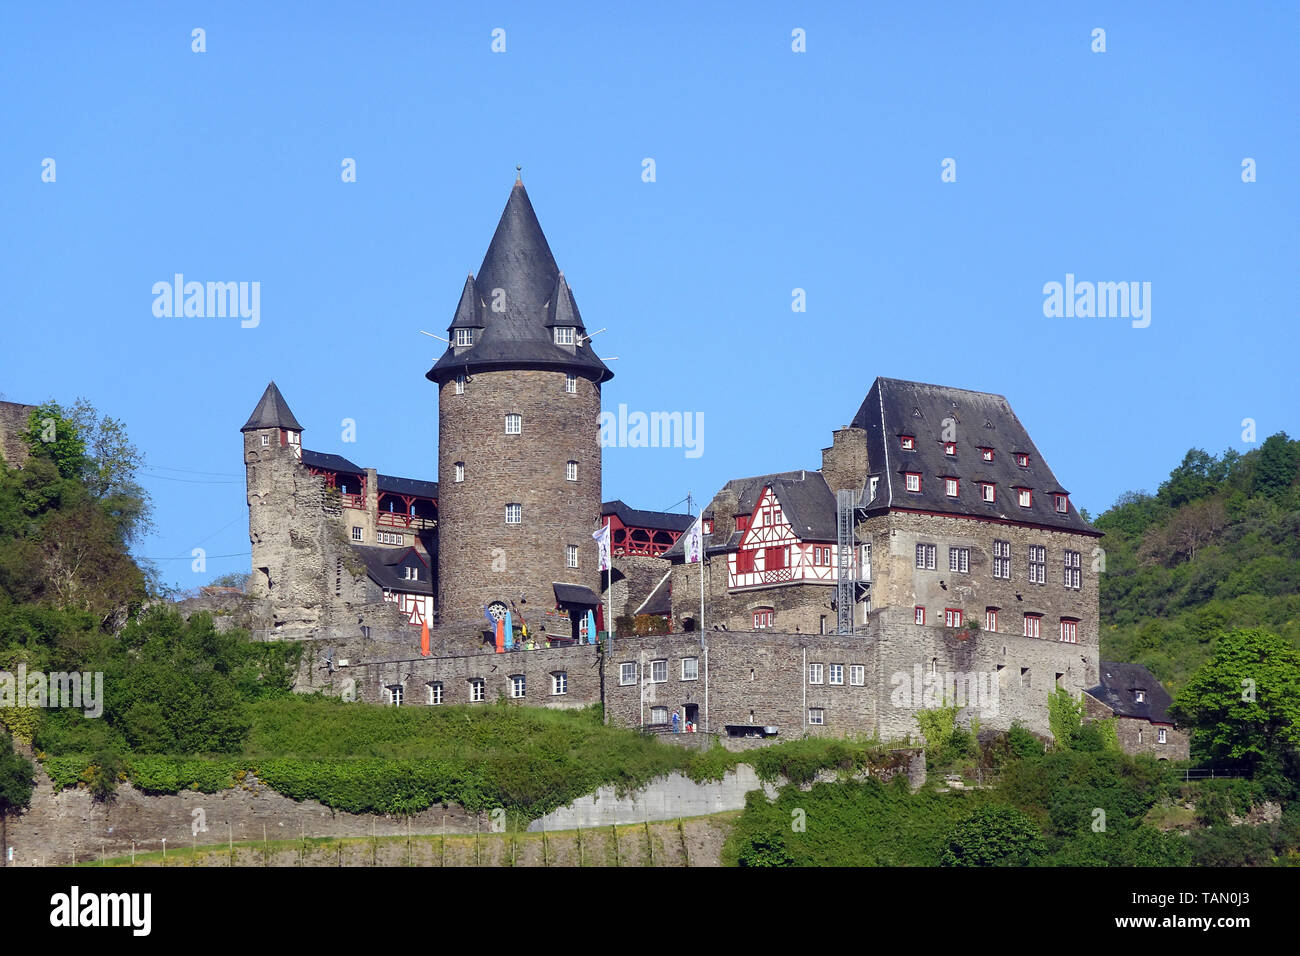 Die Burg Stahleck bei Bacharach, Unesco Welterbe Oberes Mittelrheintal, Rheinland-Pfalz, Deutschland Stockfoto